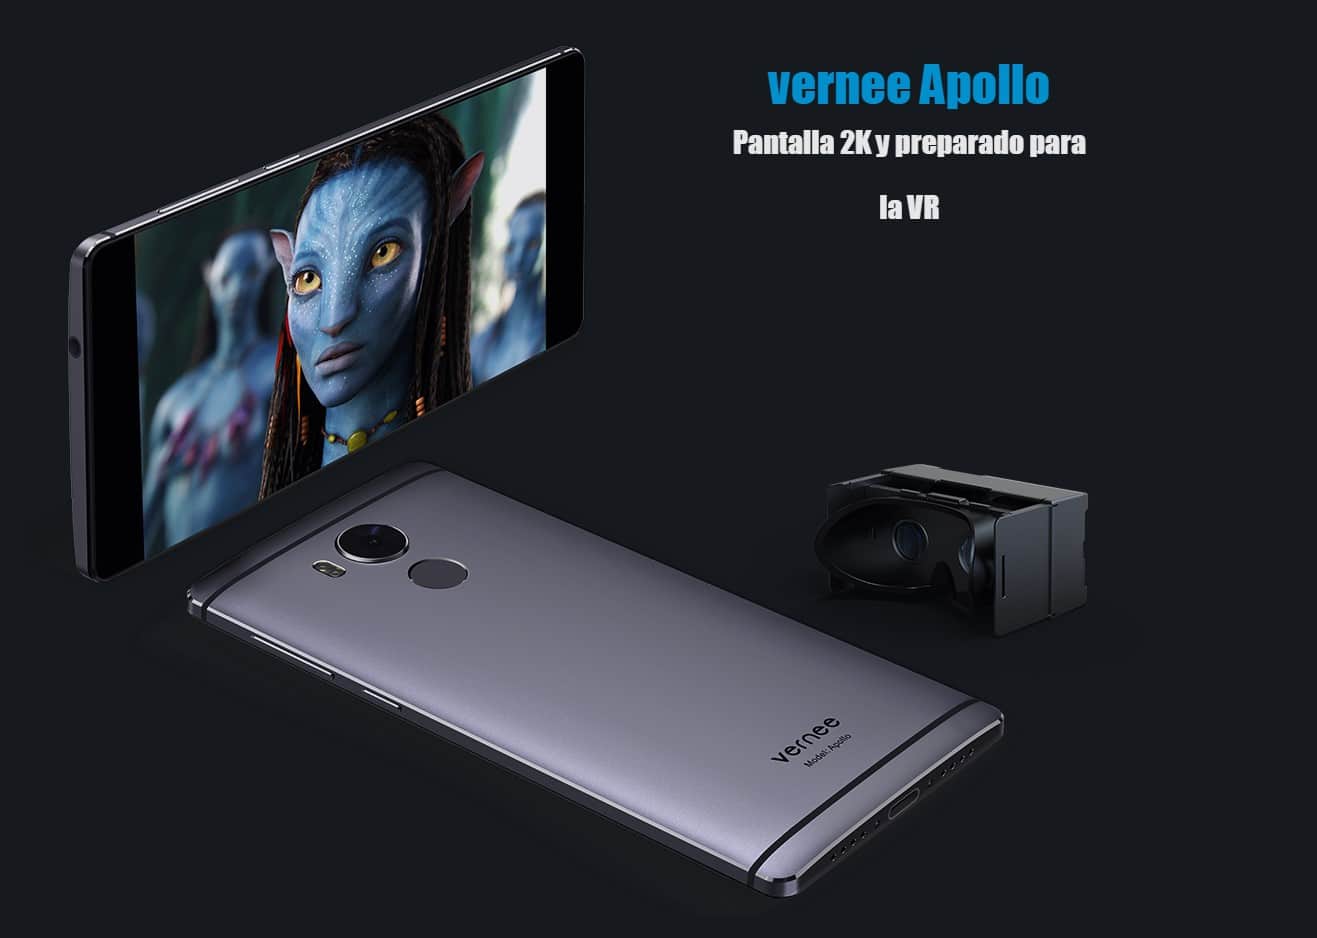 Безрамочный смартфон Vernee Apollo 2 с процессором Helio X30 и предустановленной ОС Android 81 Oreo представлен официально в Барселоне Аппарат получил двойную камеру и мощную батарею